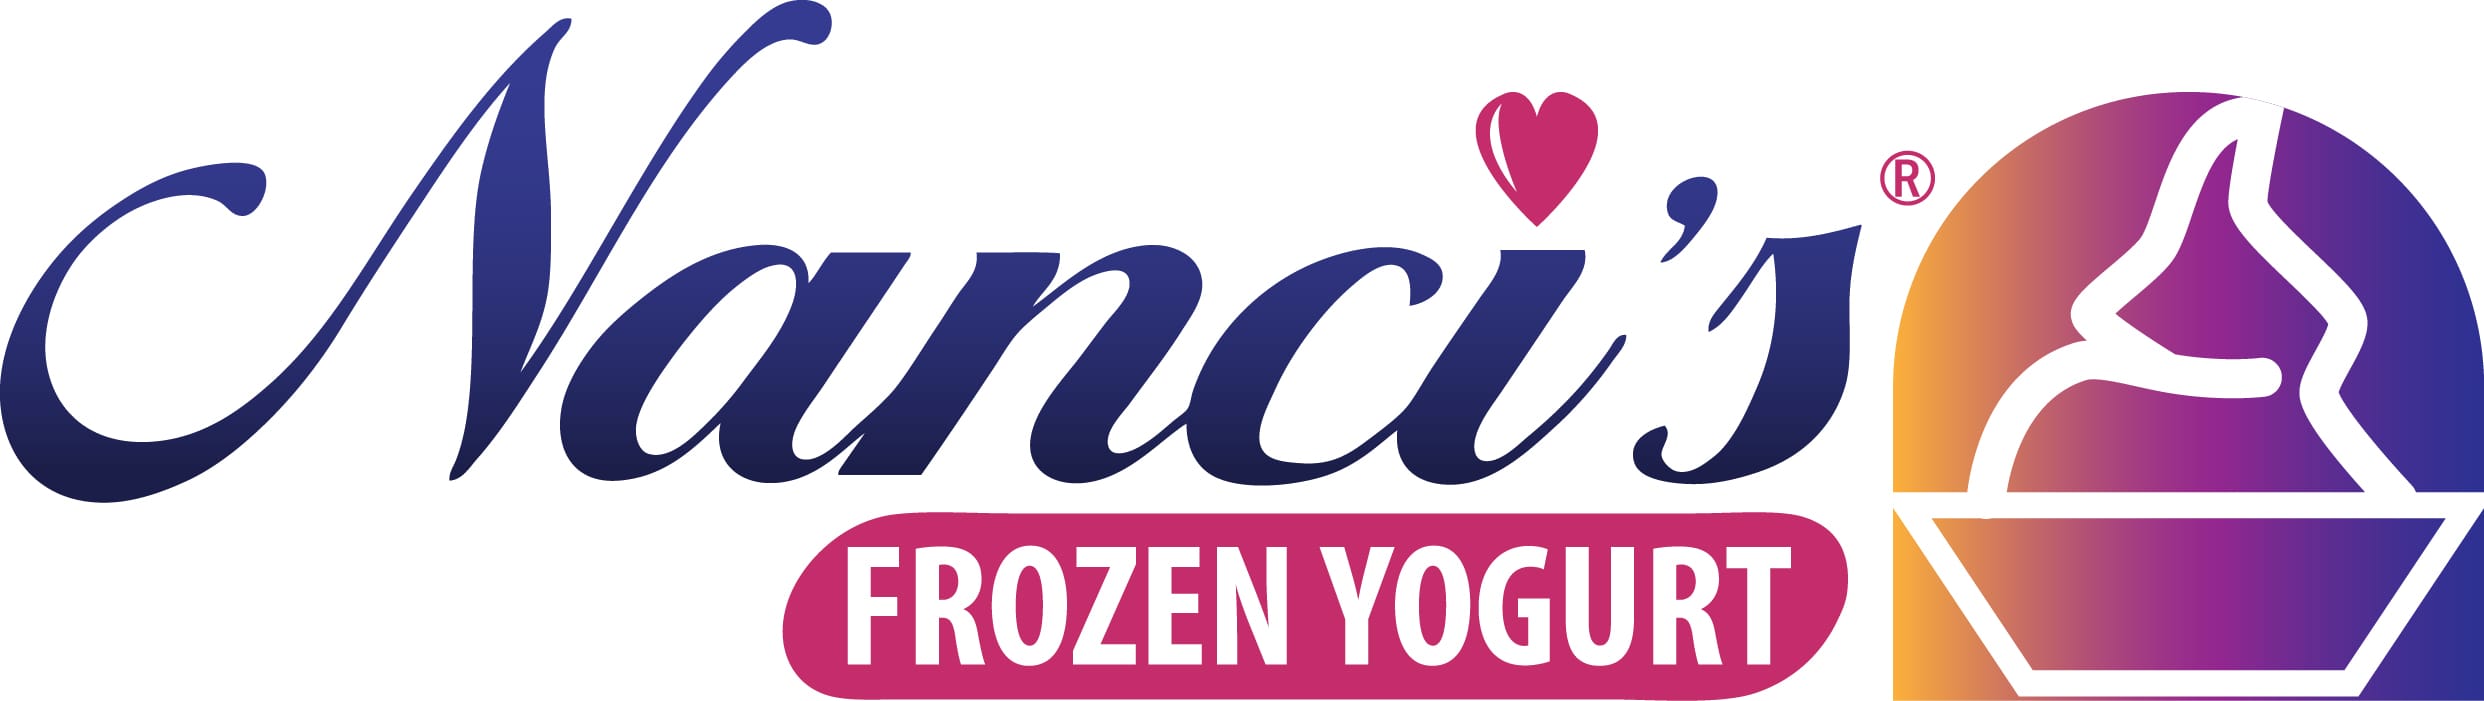 Frozen Yogurt + Ice Cream Machine – Spaceman 6235-C – Counter Top 2-Flavor  – FroCup